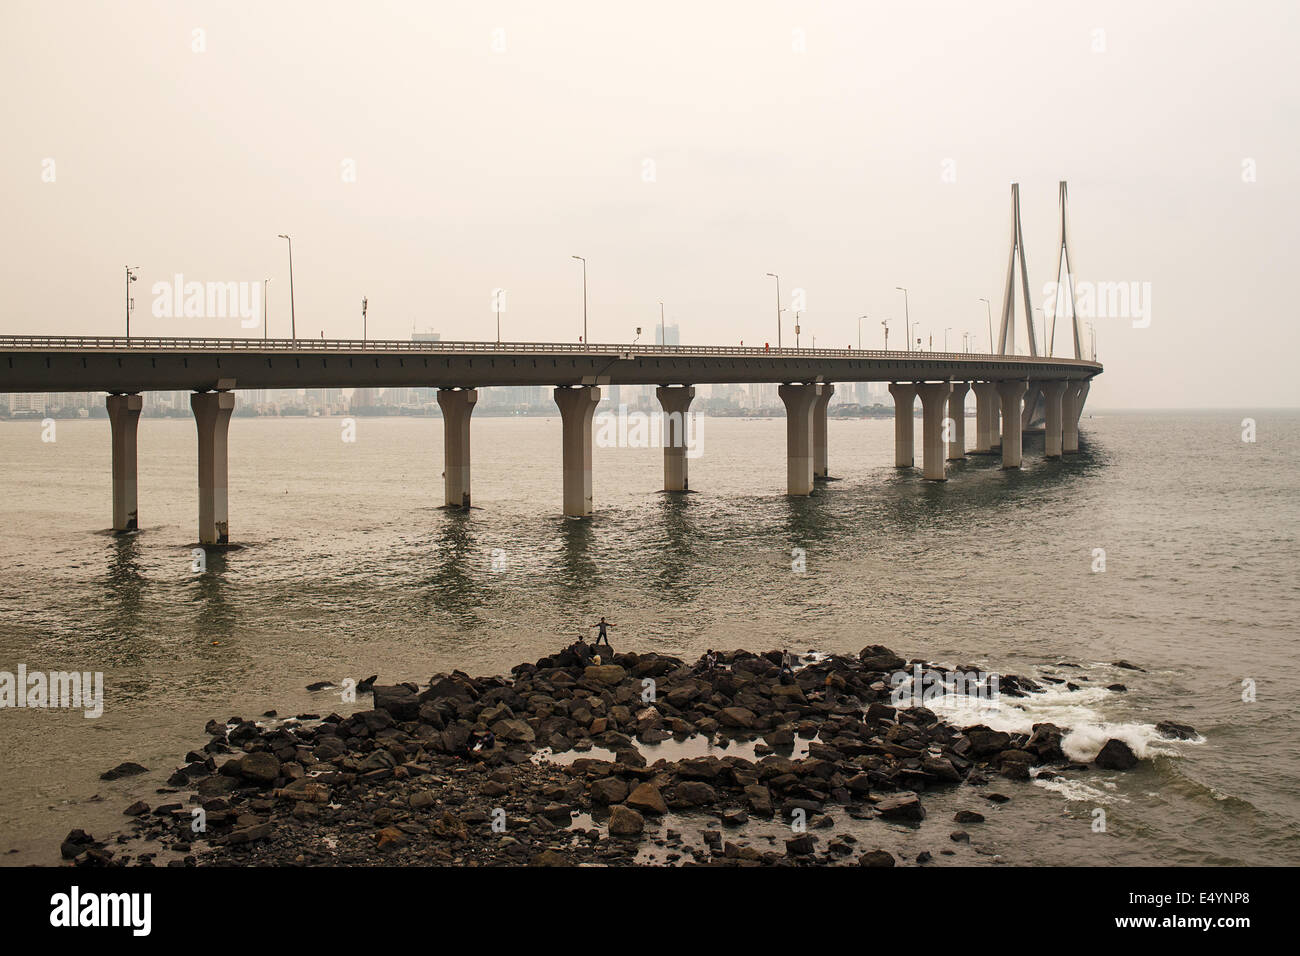 Bandra-Worli Sea Link bridge seen from Bandra in Mumbai, India Stock Photo